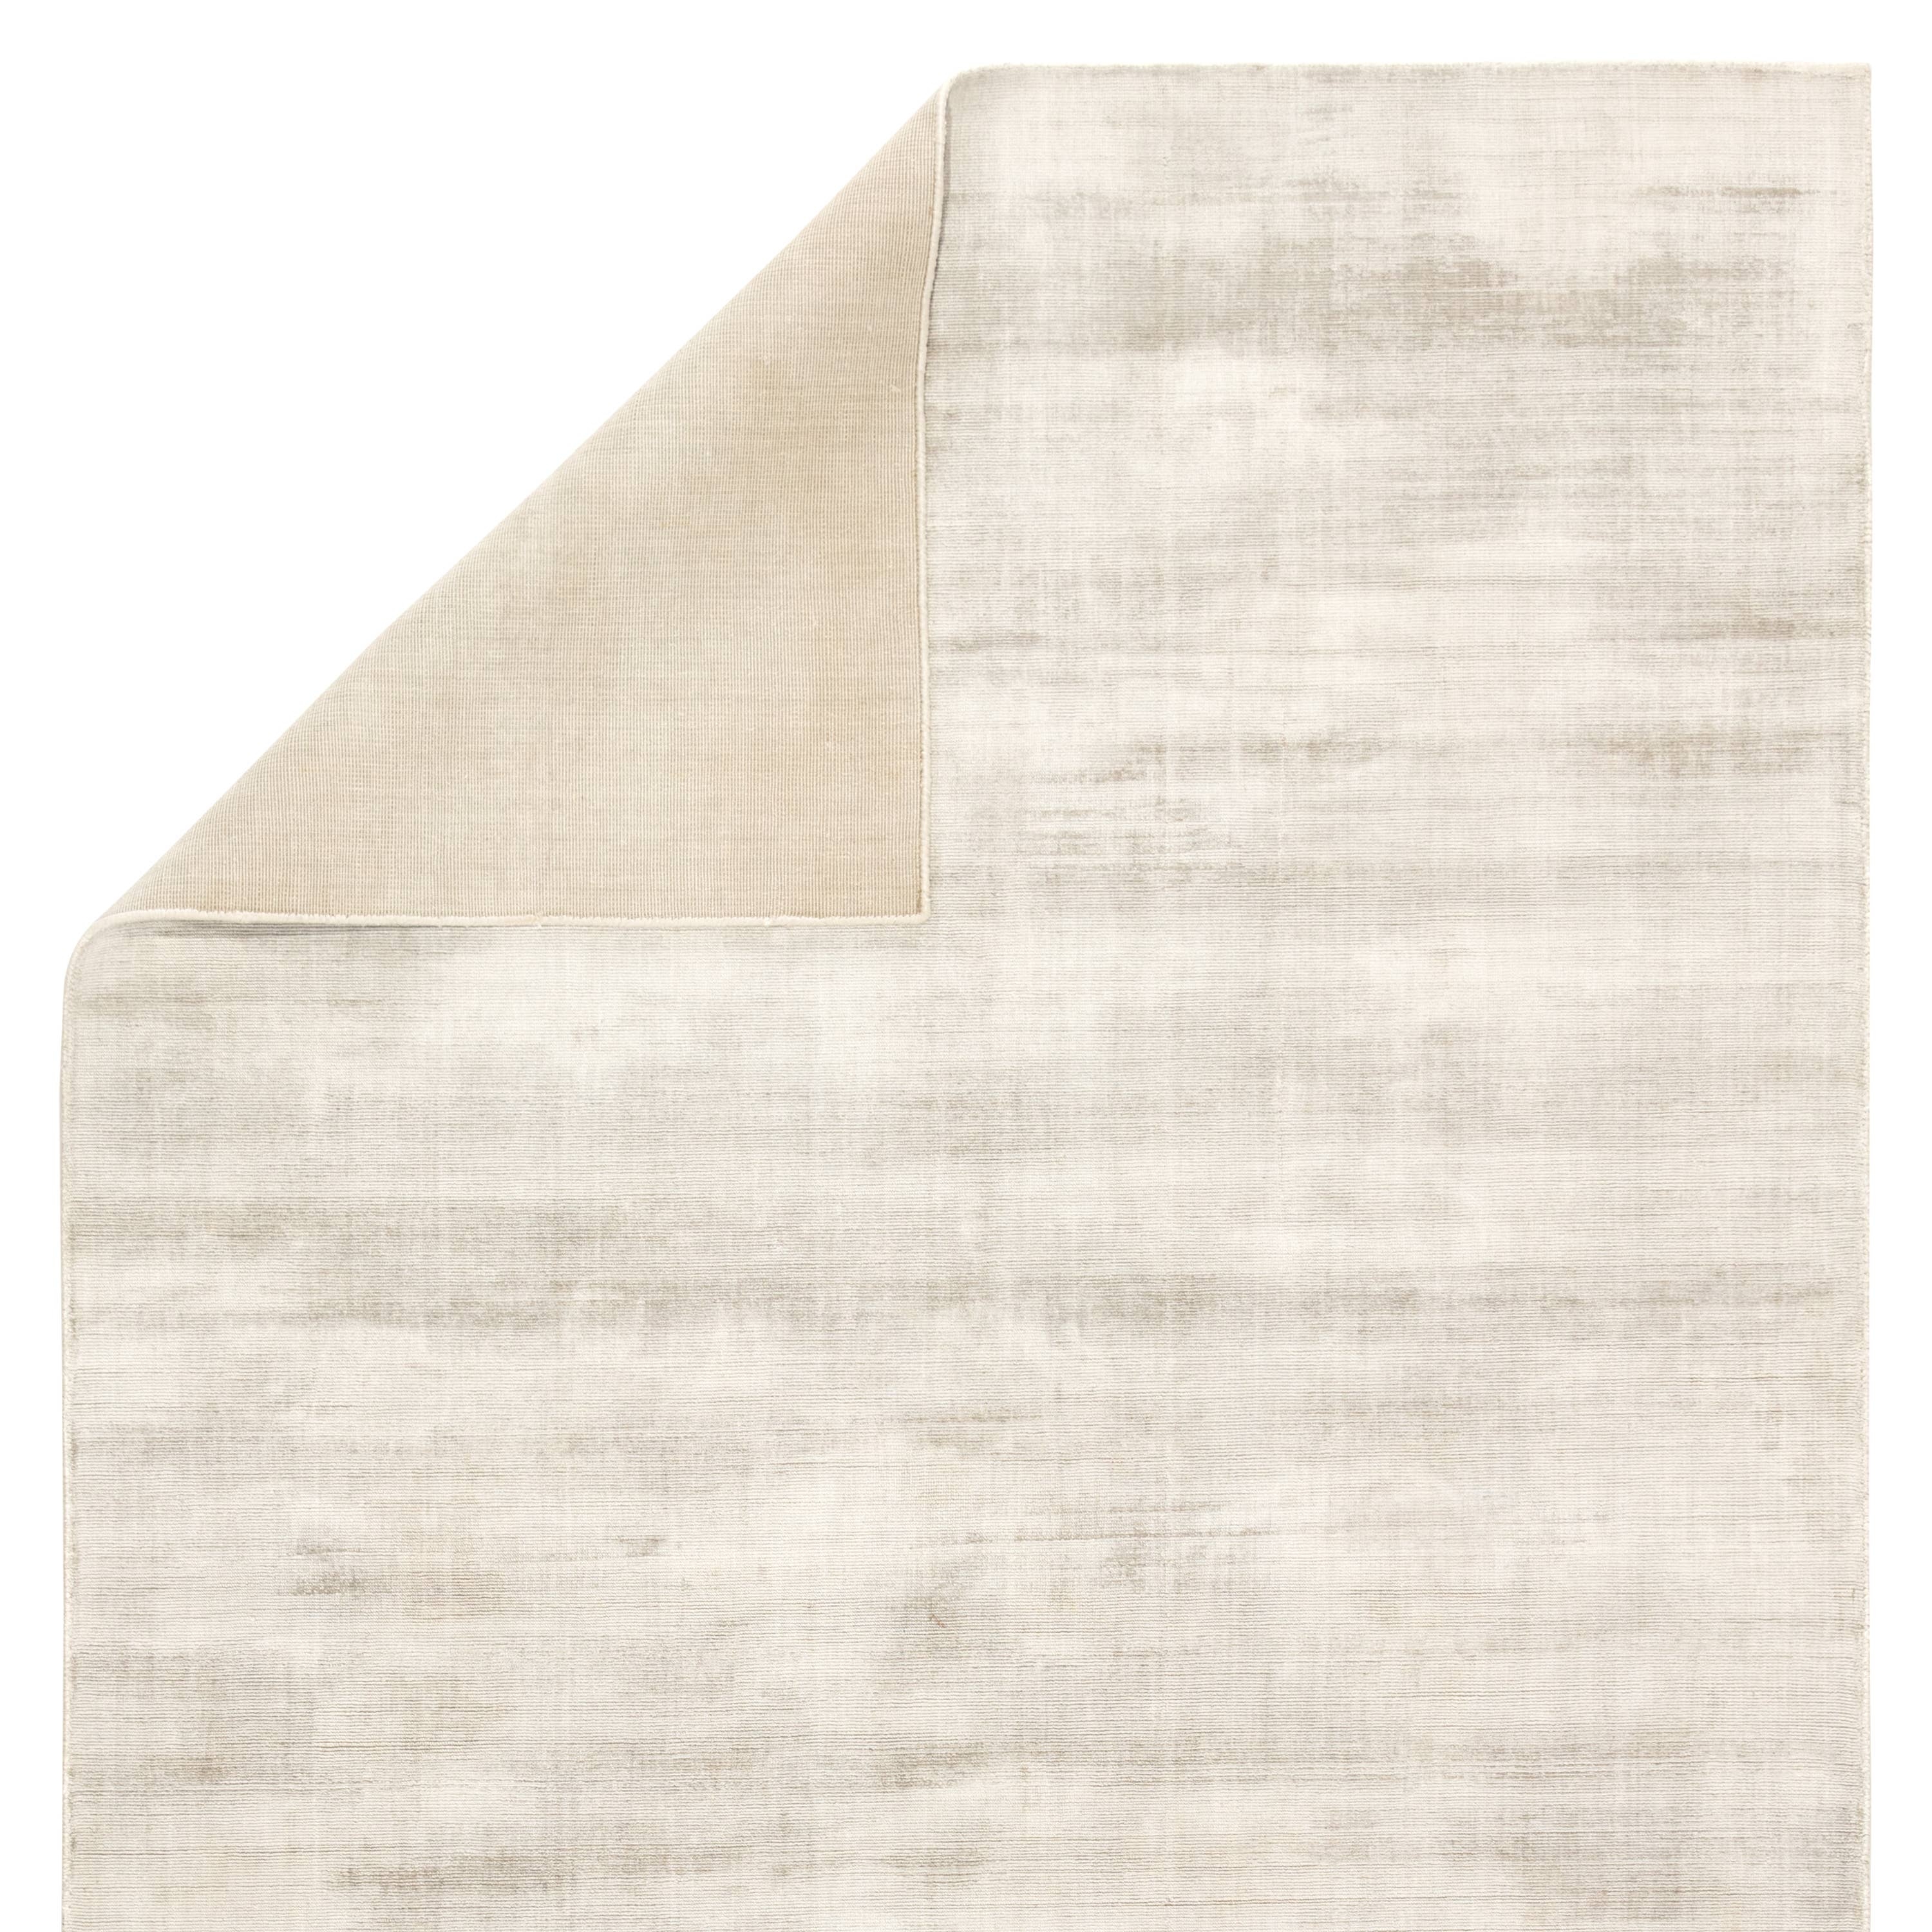 Yasmin Handloomed Area Rug, Birch, 8' x 10' - Image 2